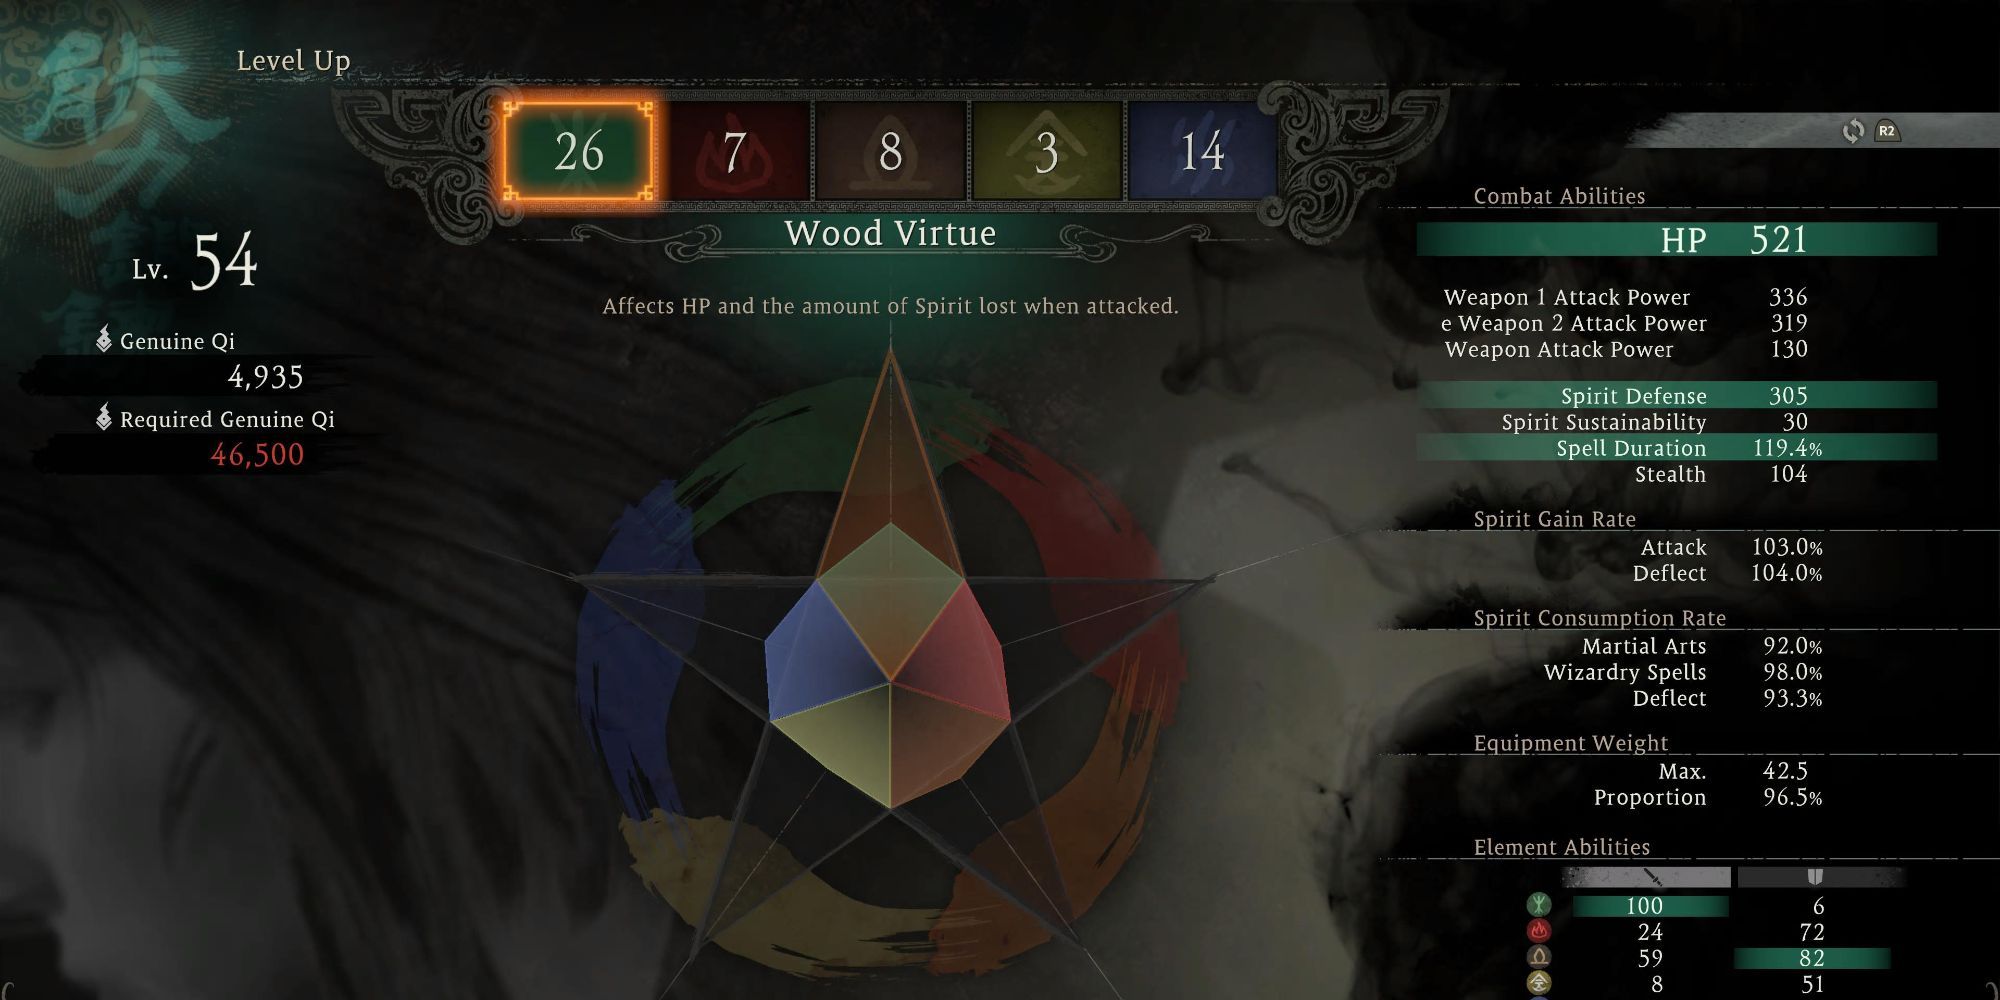 Wo Long: Fallen Dynasty - Wood virtue menu showing stats